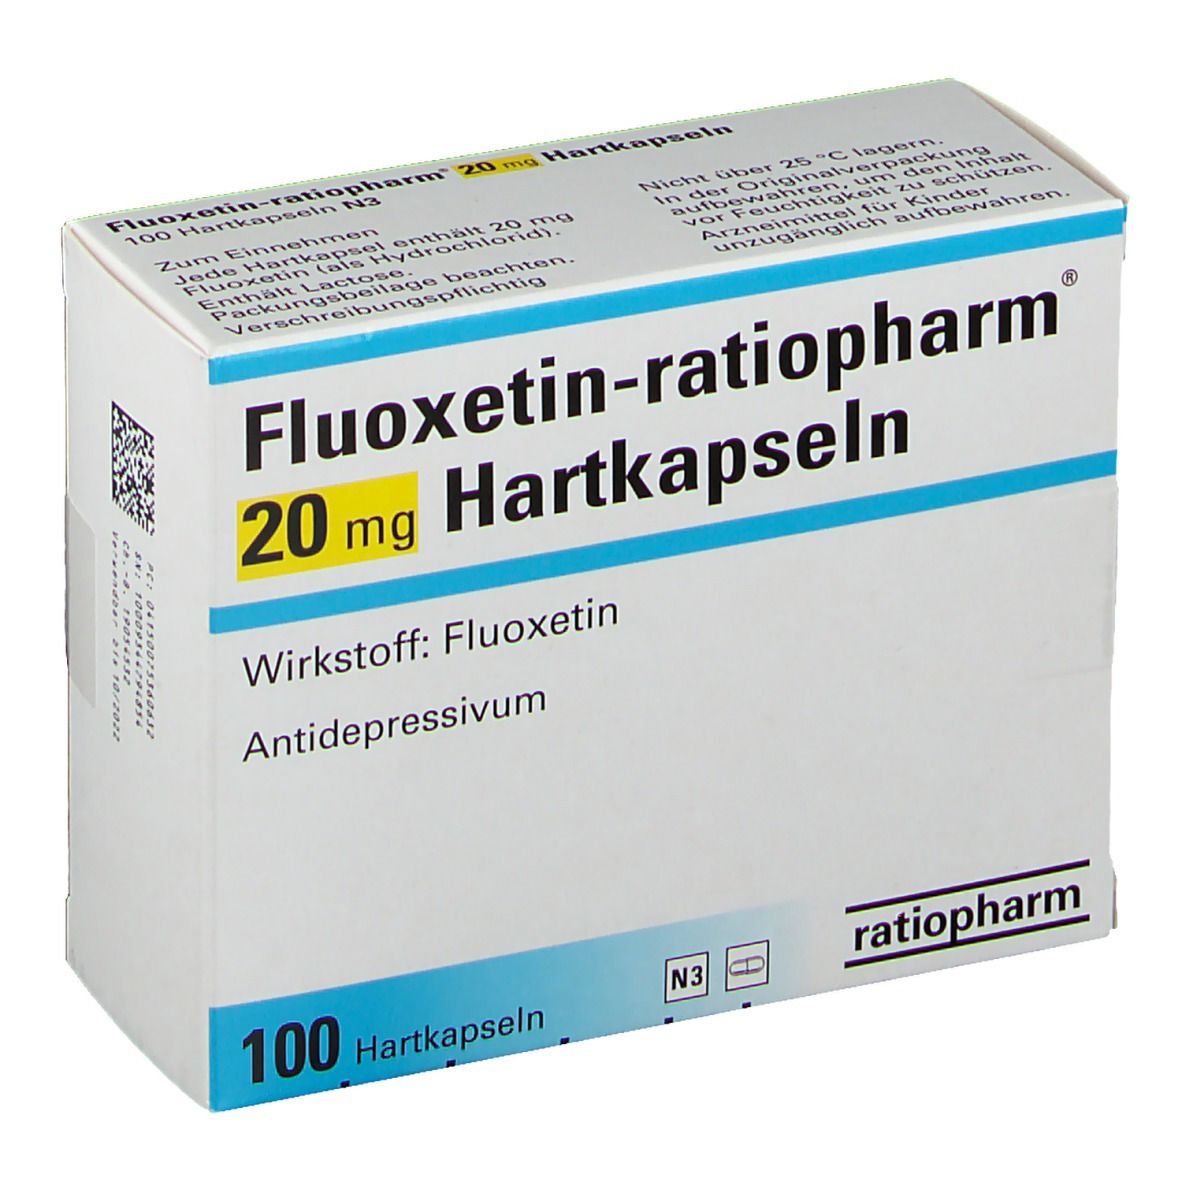 Fluoxetin-ratiopharm® 20 mg Hartkapseln